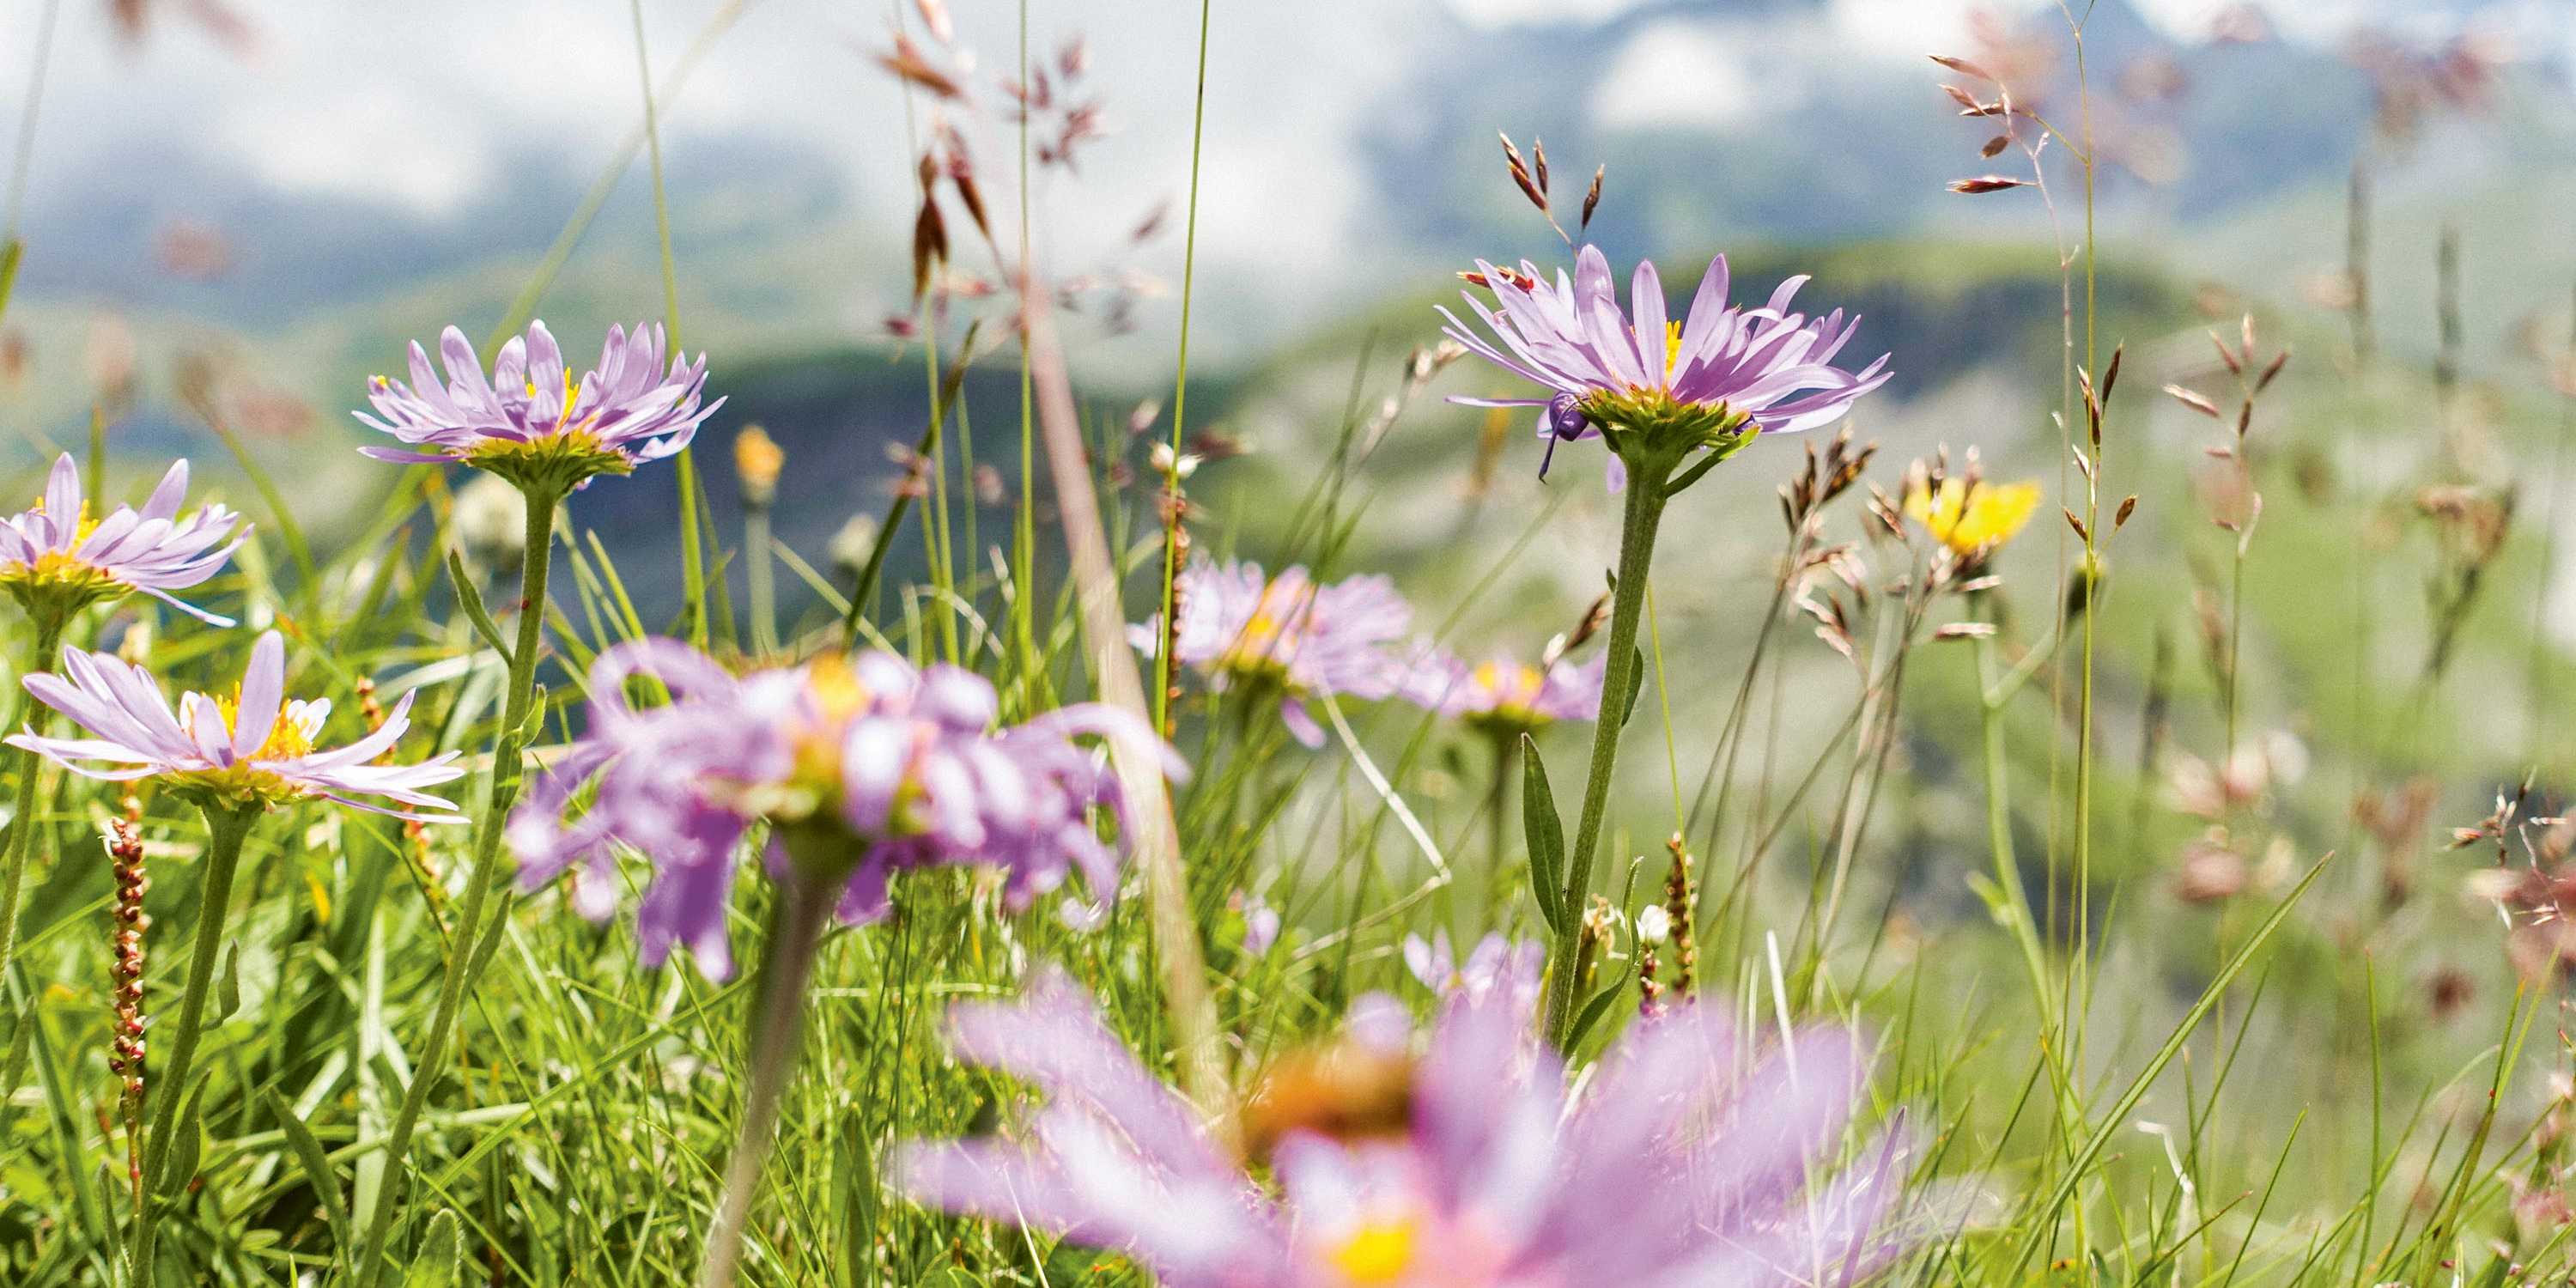 Flowering alpine asters